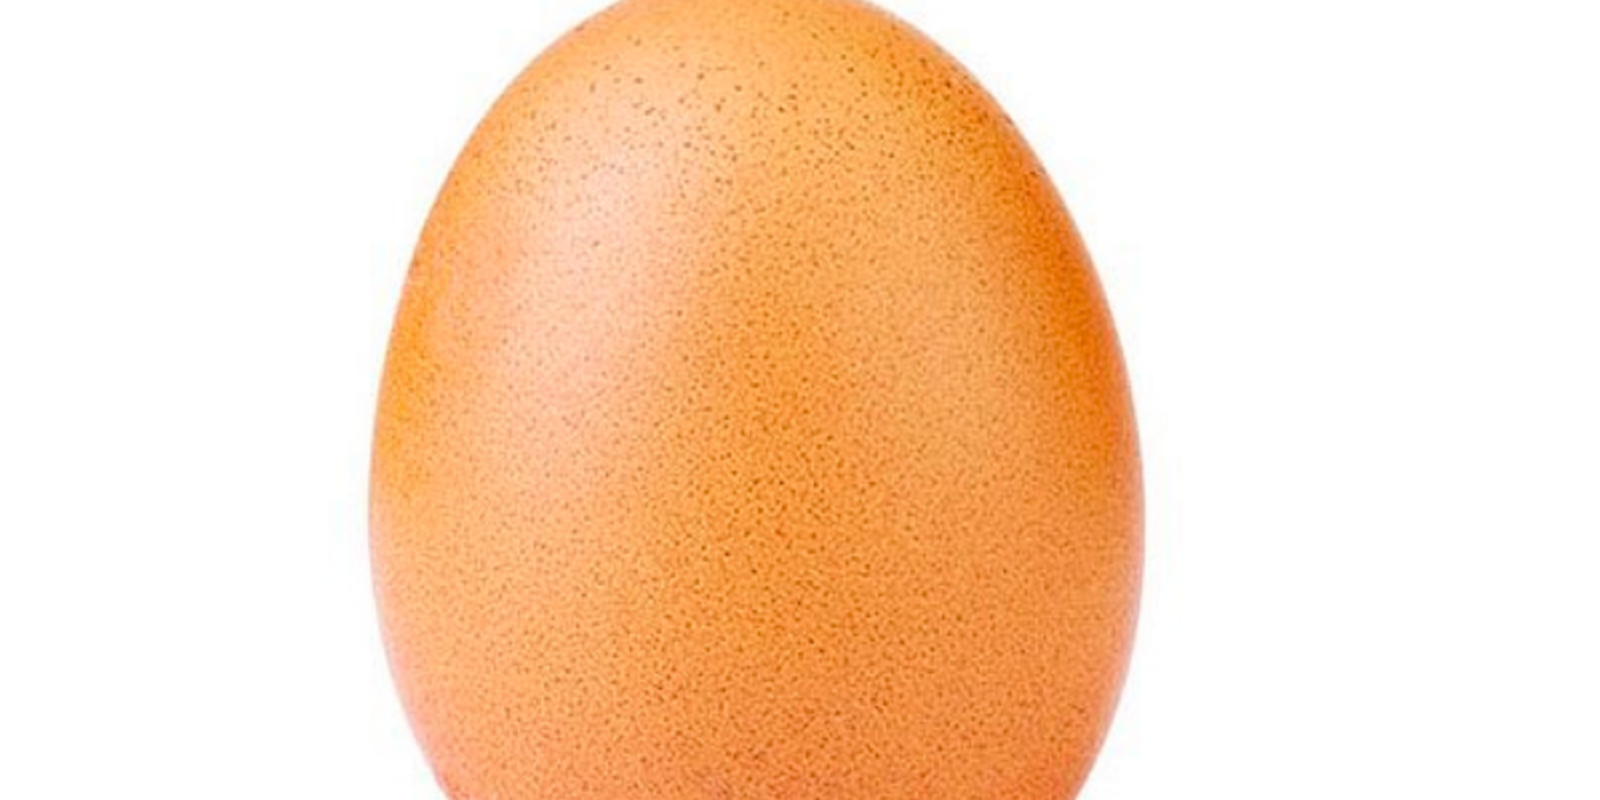 egg kylie jenner 18 million